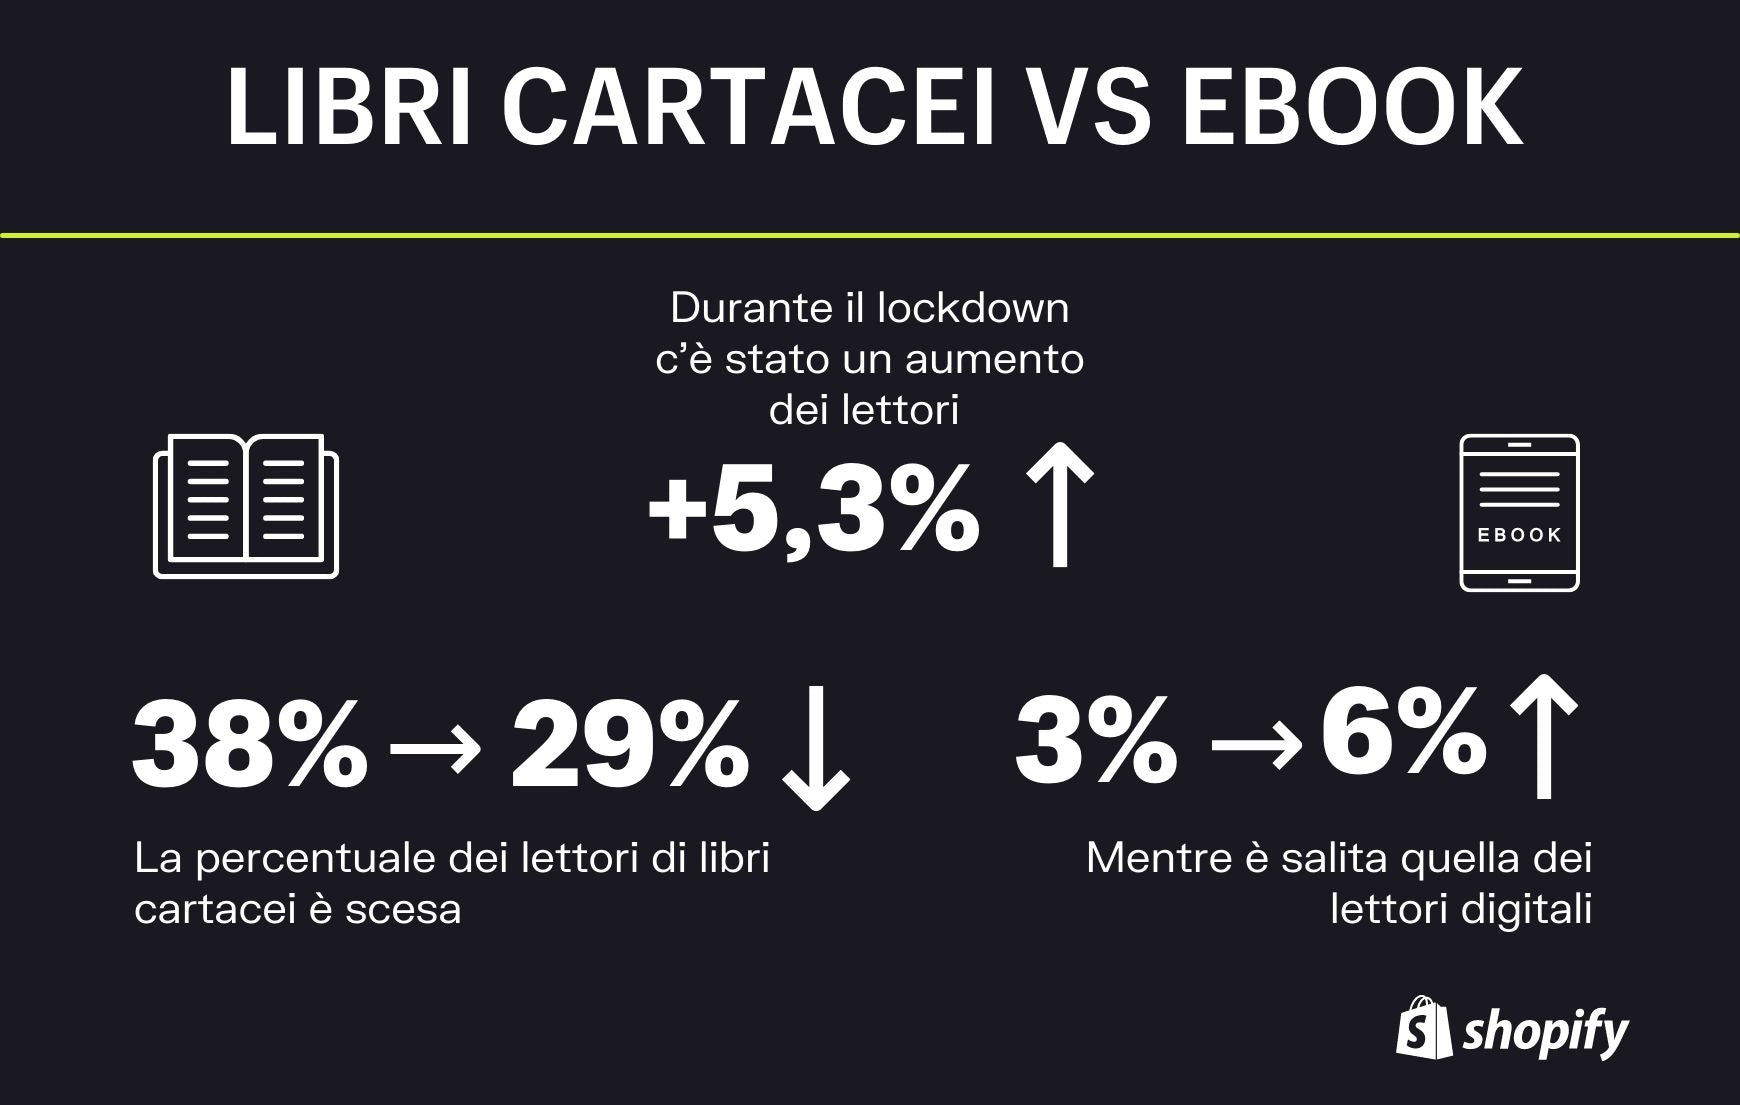 ebook vs cartaceo statistiche